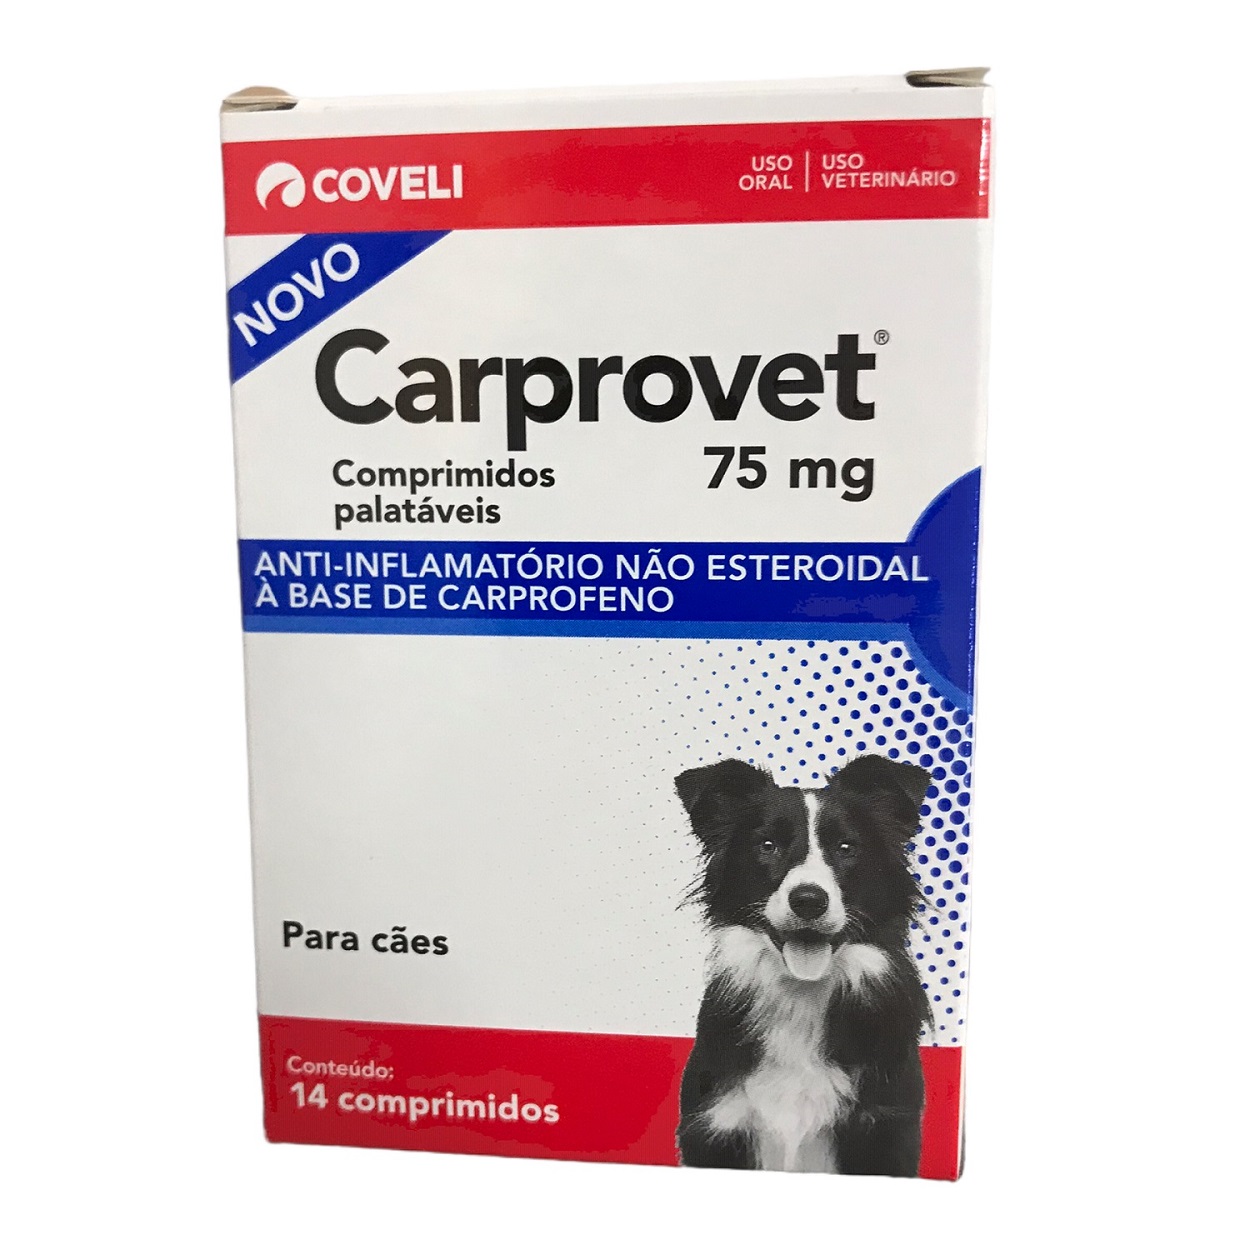 Carprovet 75mg (14 comprimidos) - Coveli